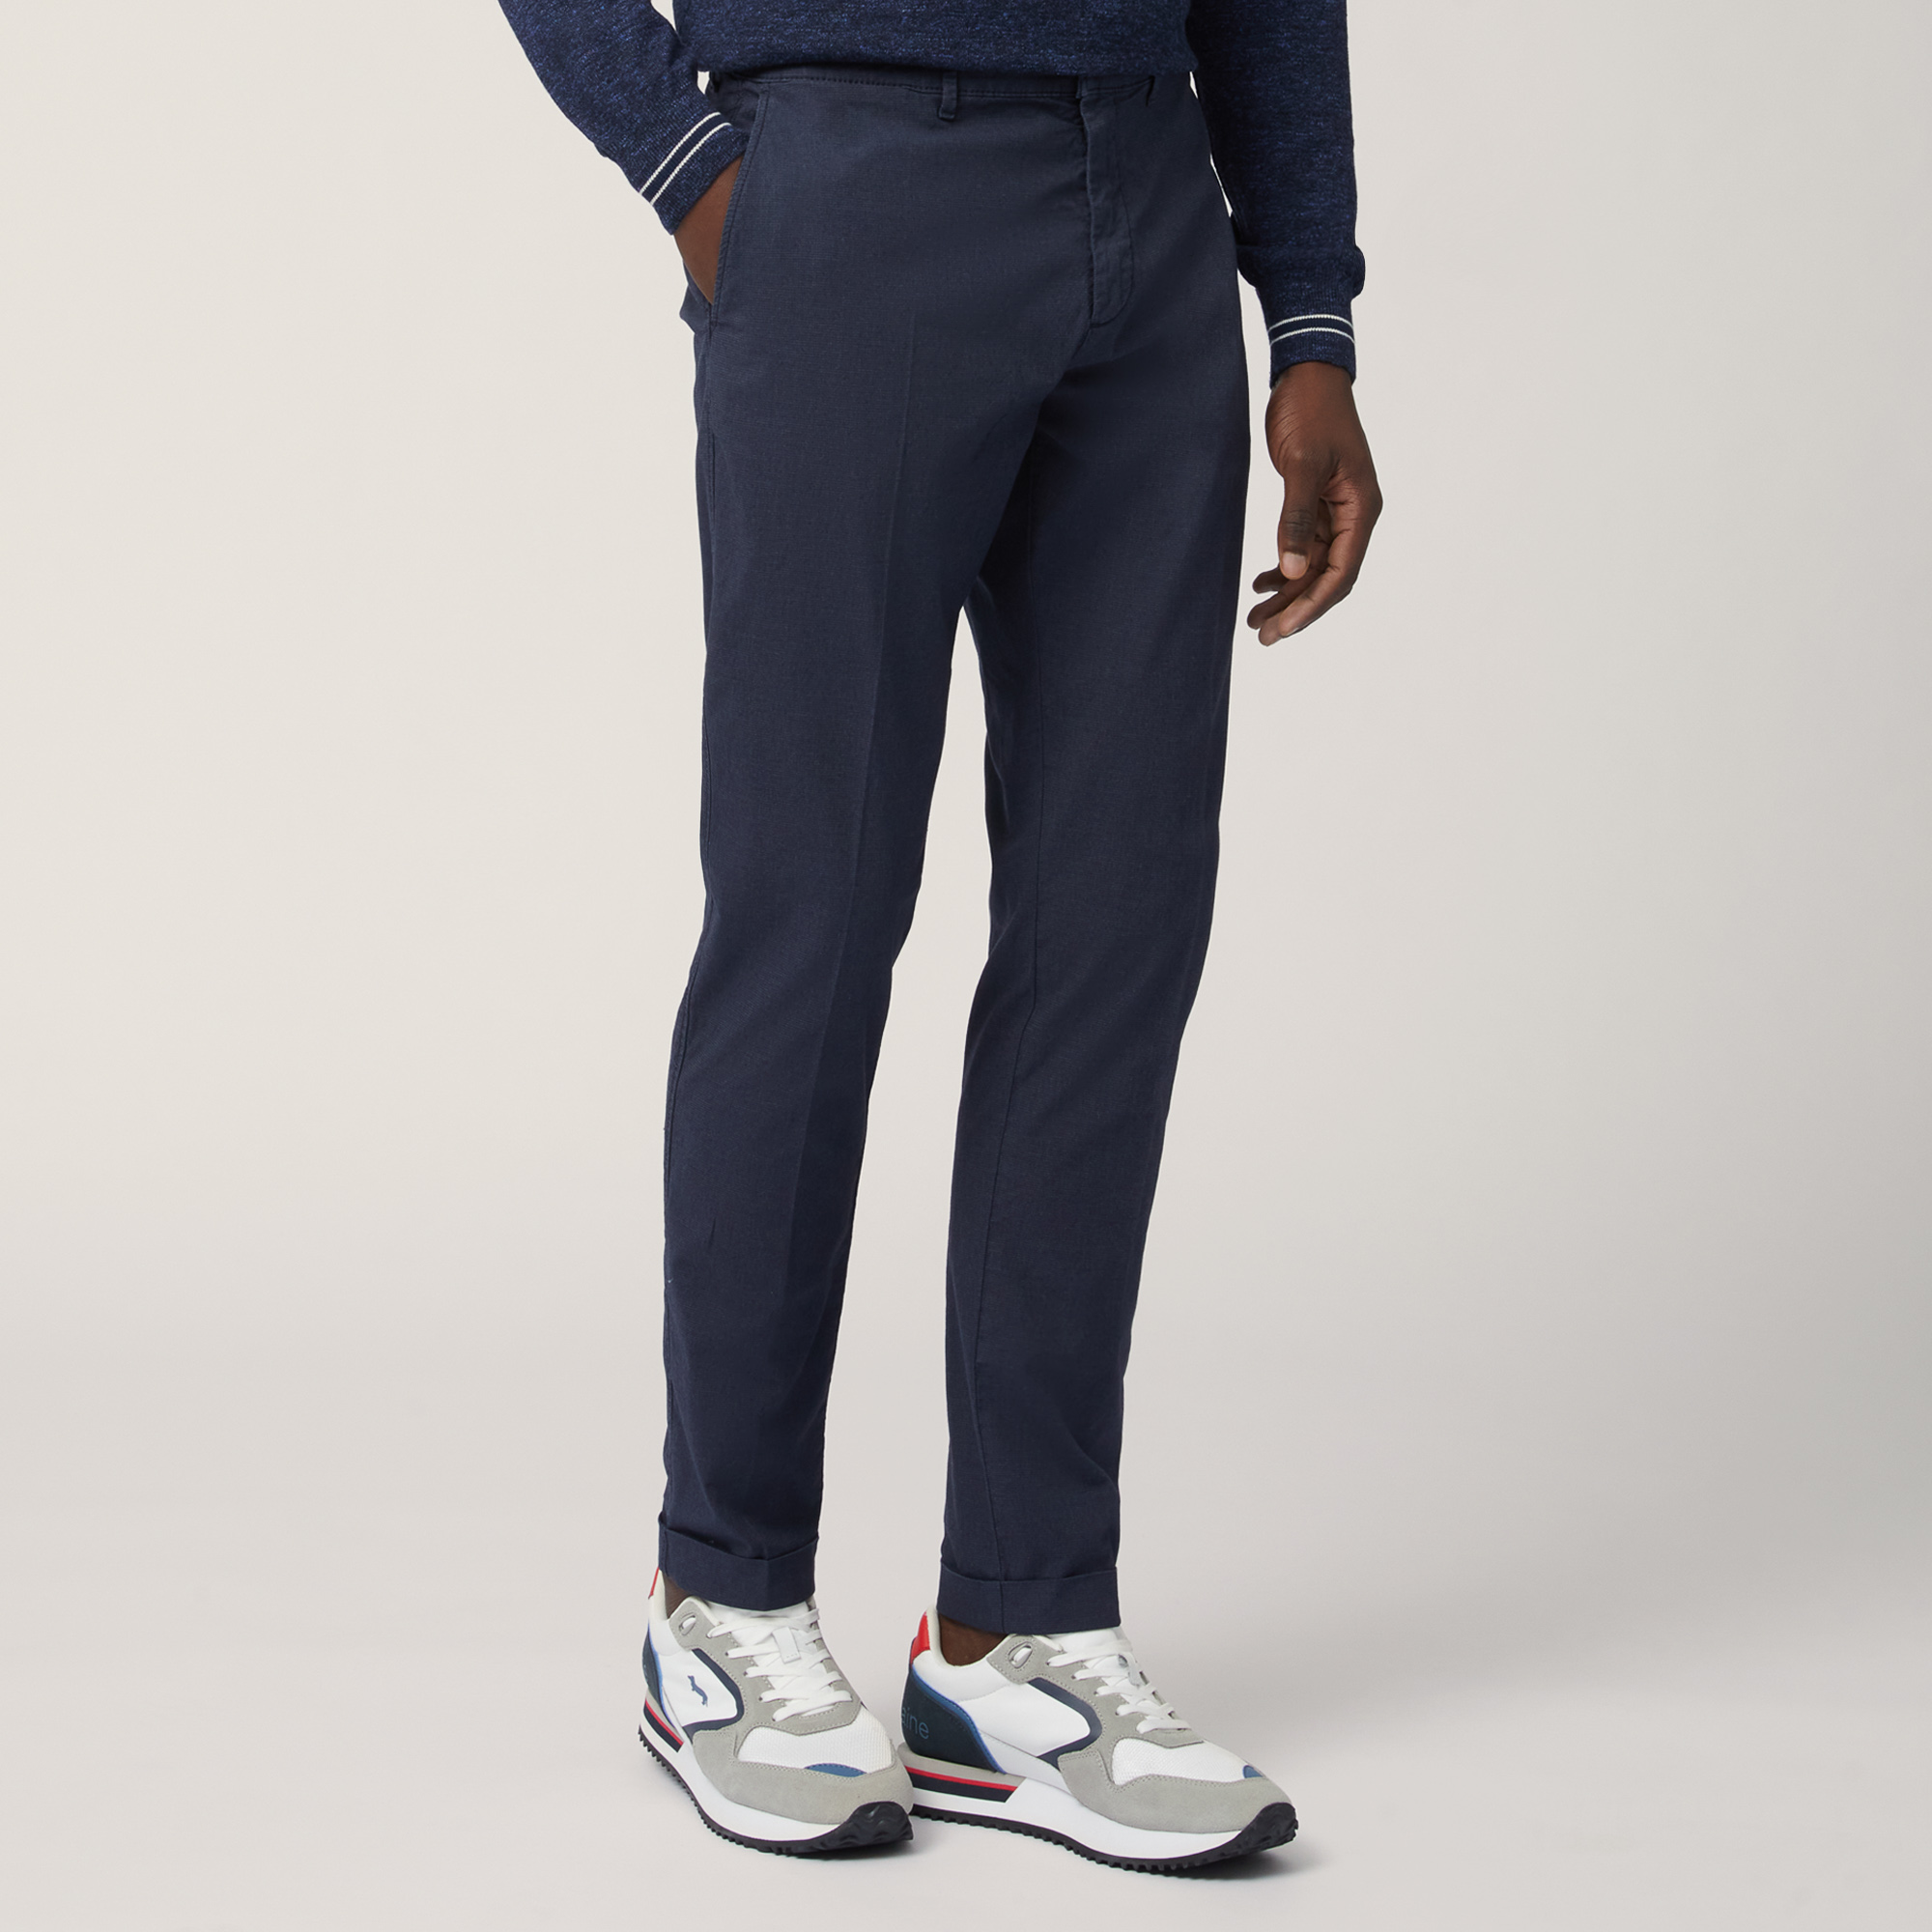 Pantaloni Chino Slim Fit, Blu Navy, large image number 0